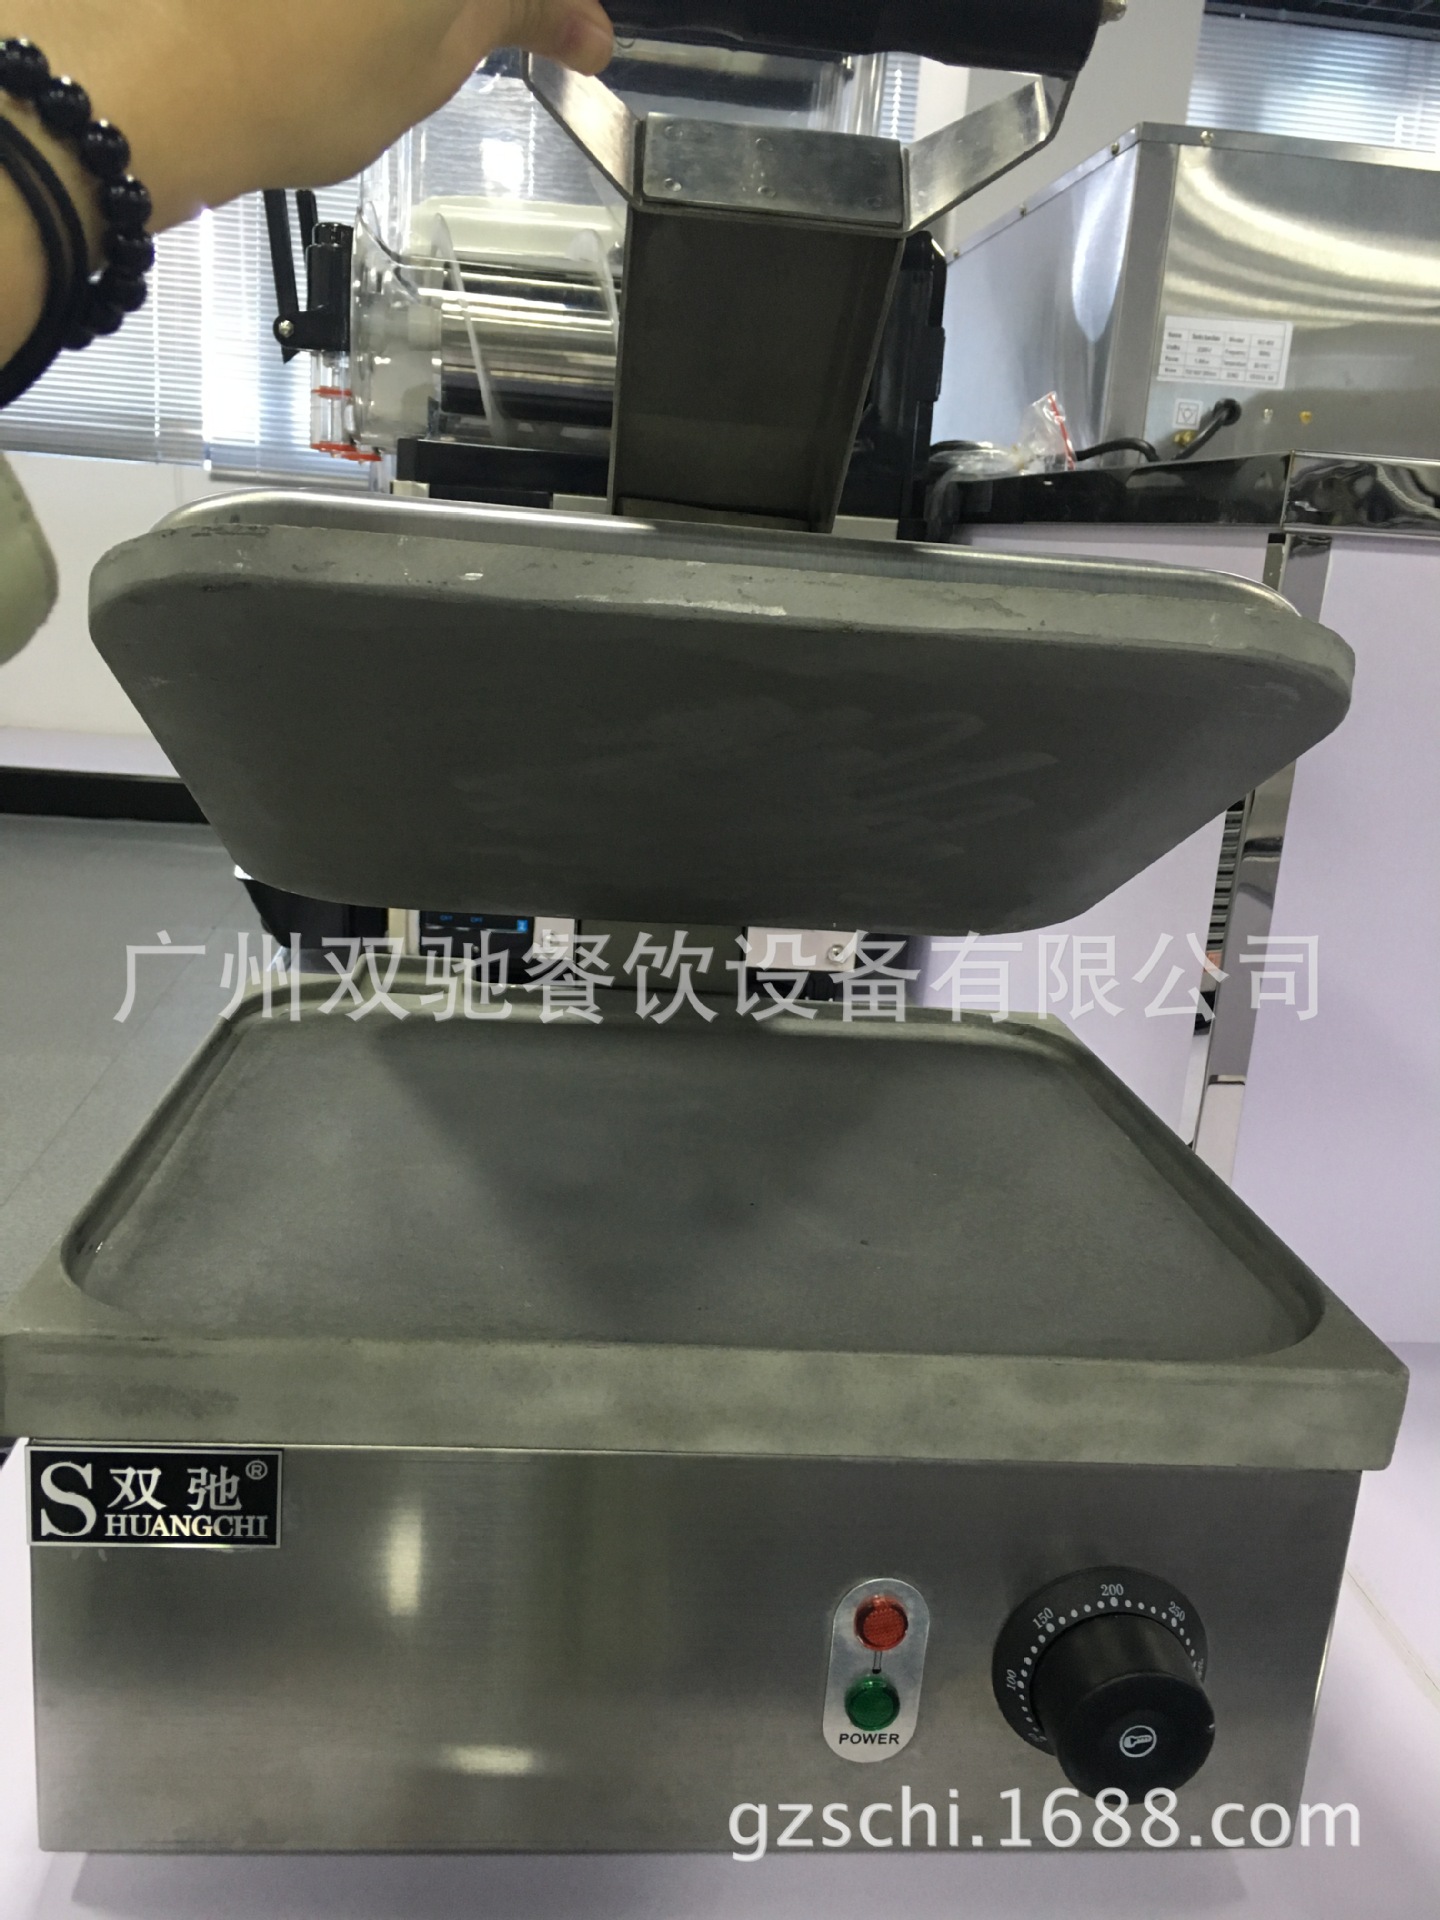 广州双驰厂家直销正品批发九式上坑下坑多士炉商用吐司面包早餐机